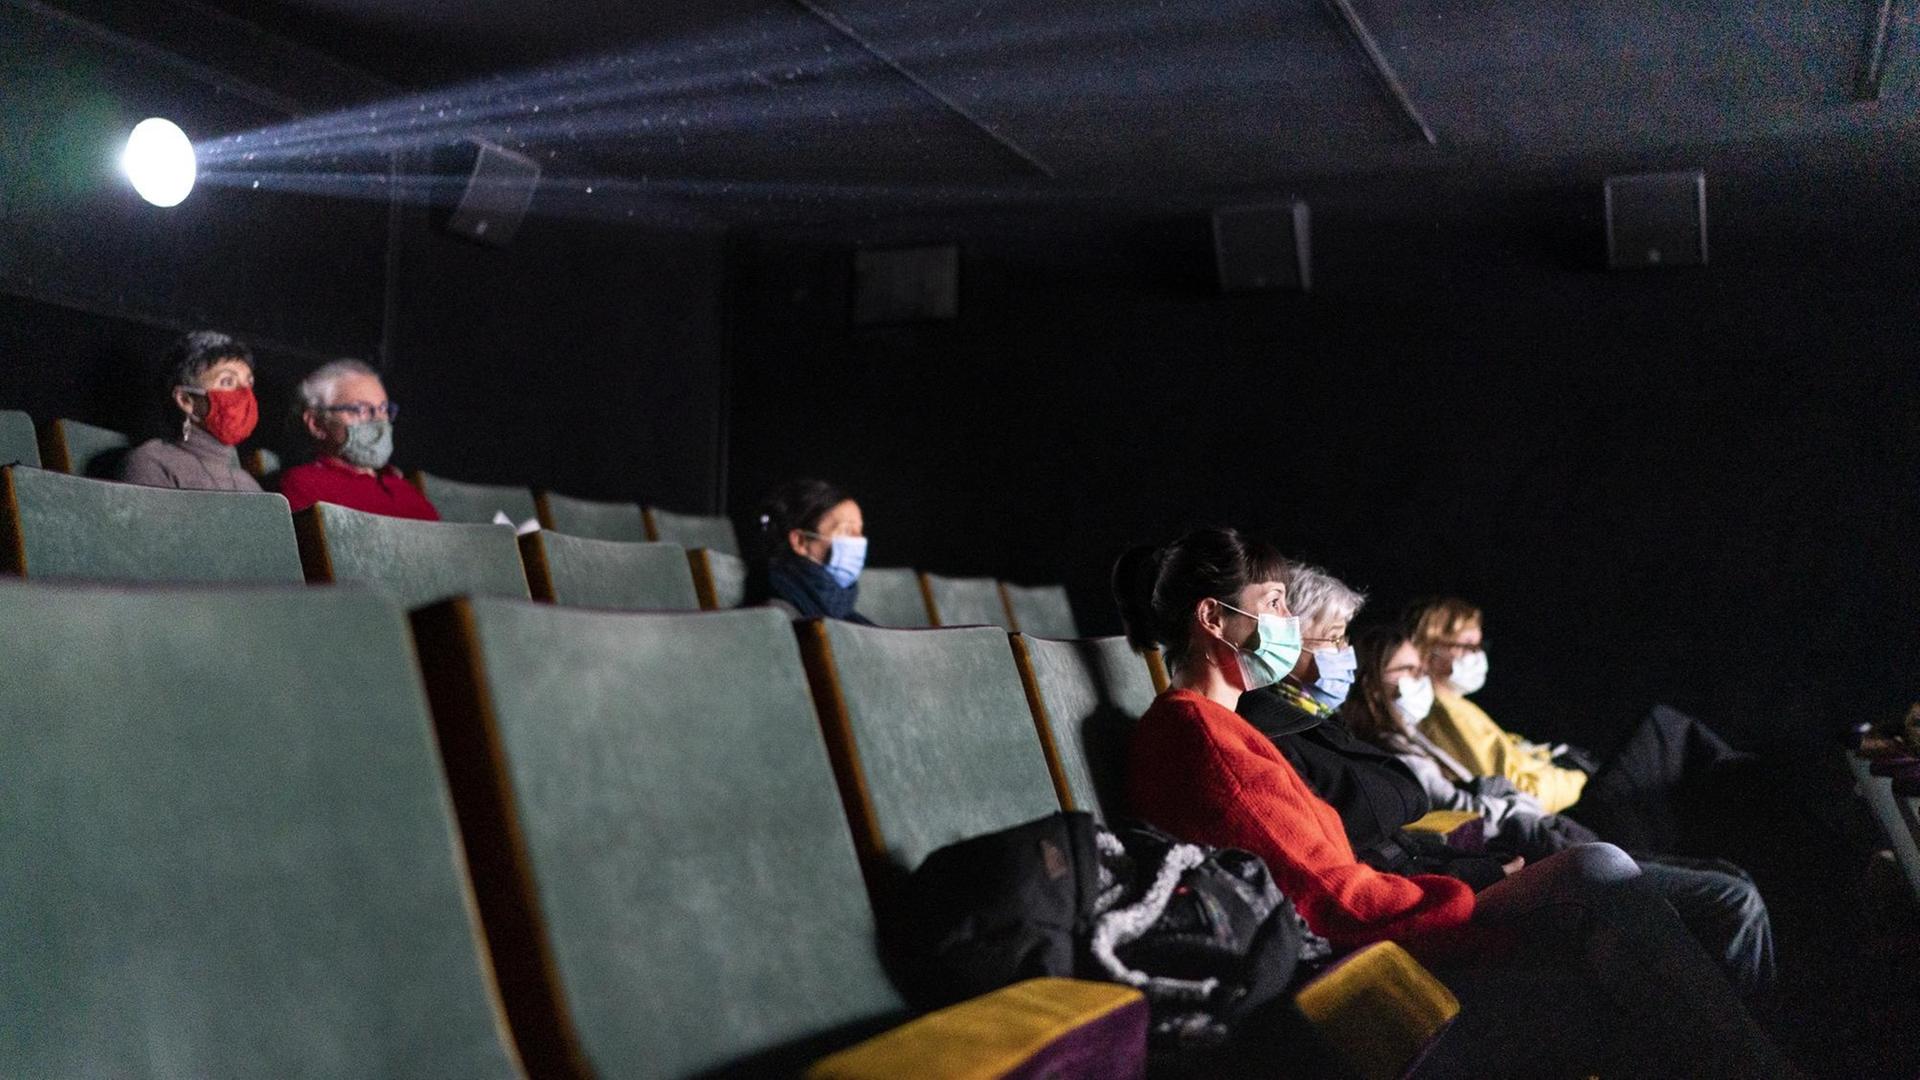 Personen sitzen mit Abstand und Maske in einem Kino.